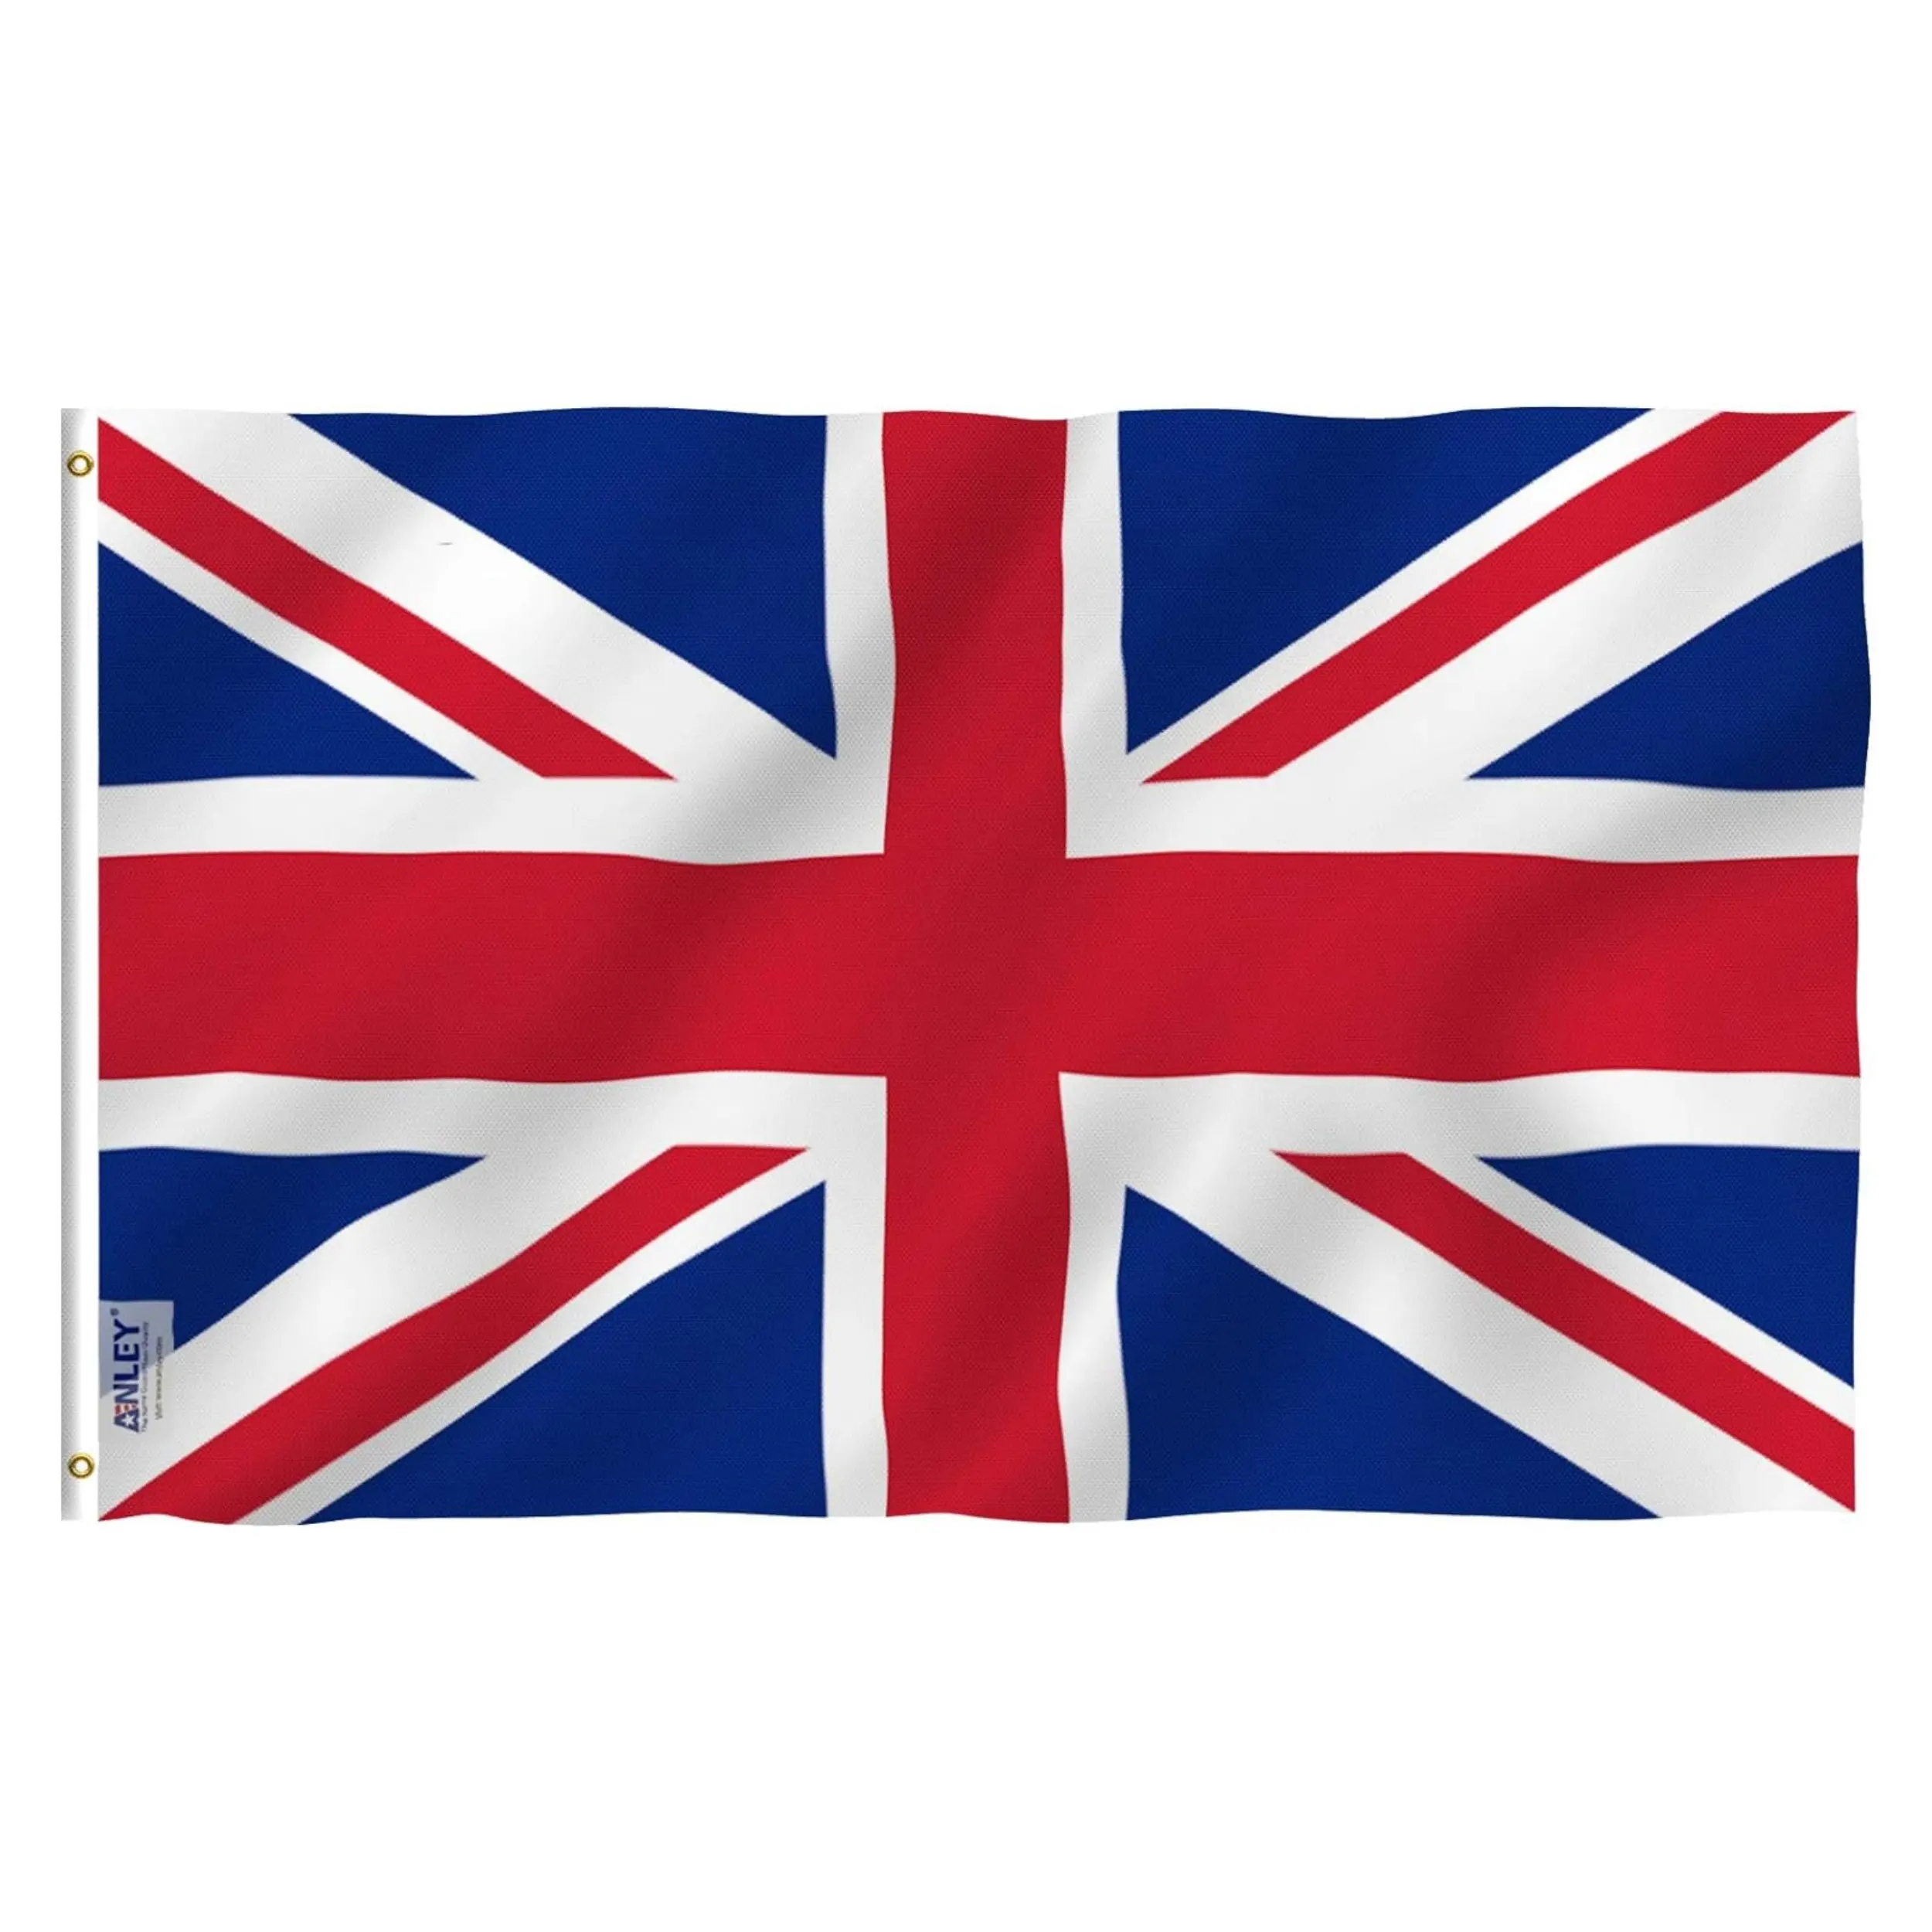 Toptan 3x5 FT Polyester İngiltere İngiltere ulusal bayrak tüm ülke İngiltere birleşik krallık İngiliz bayrağı 3x5FT Union Jack bayrağı